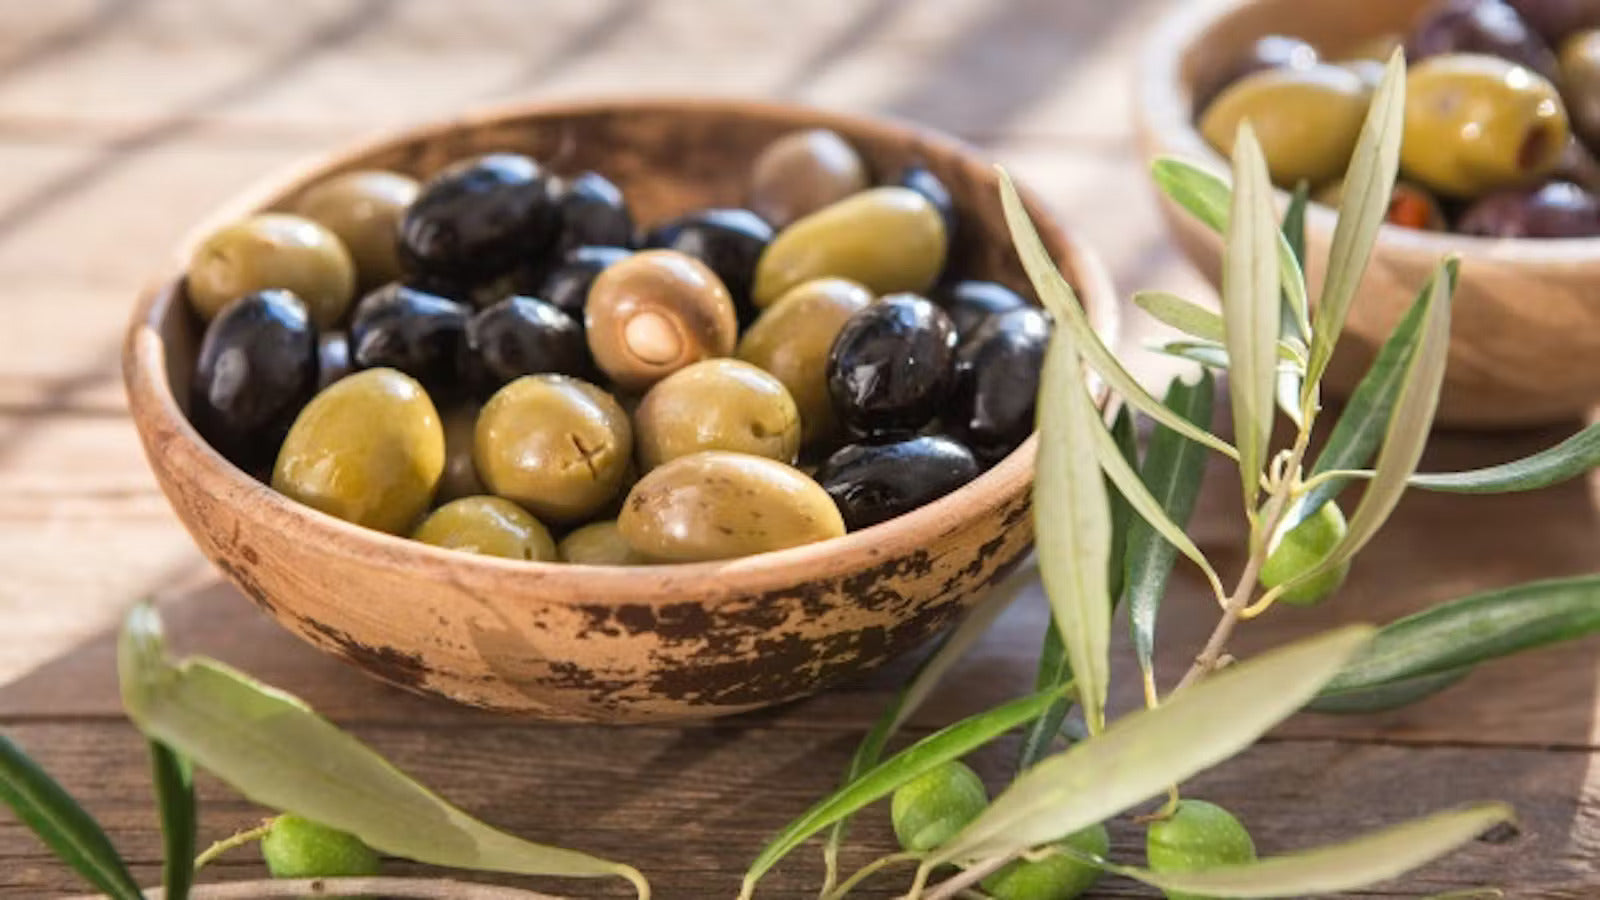 Kalamata Olives: Facts and benefits of Kalamata Greek Olives